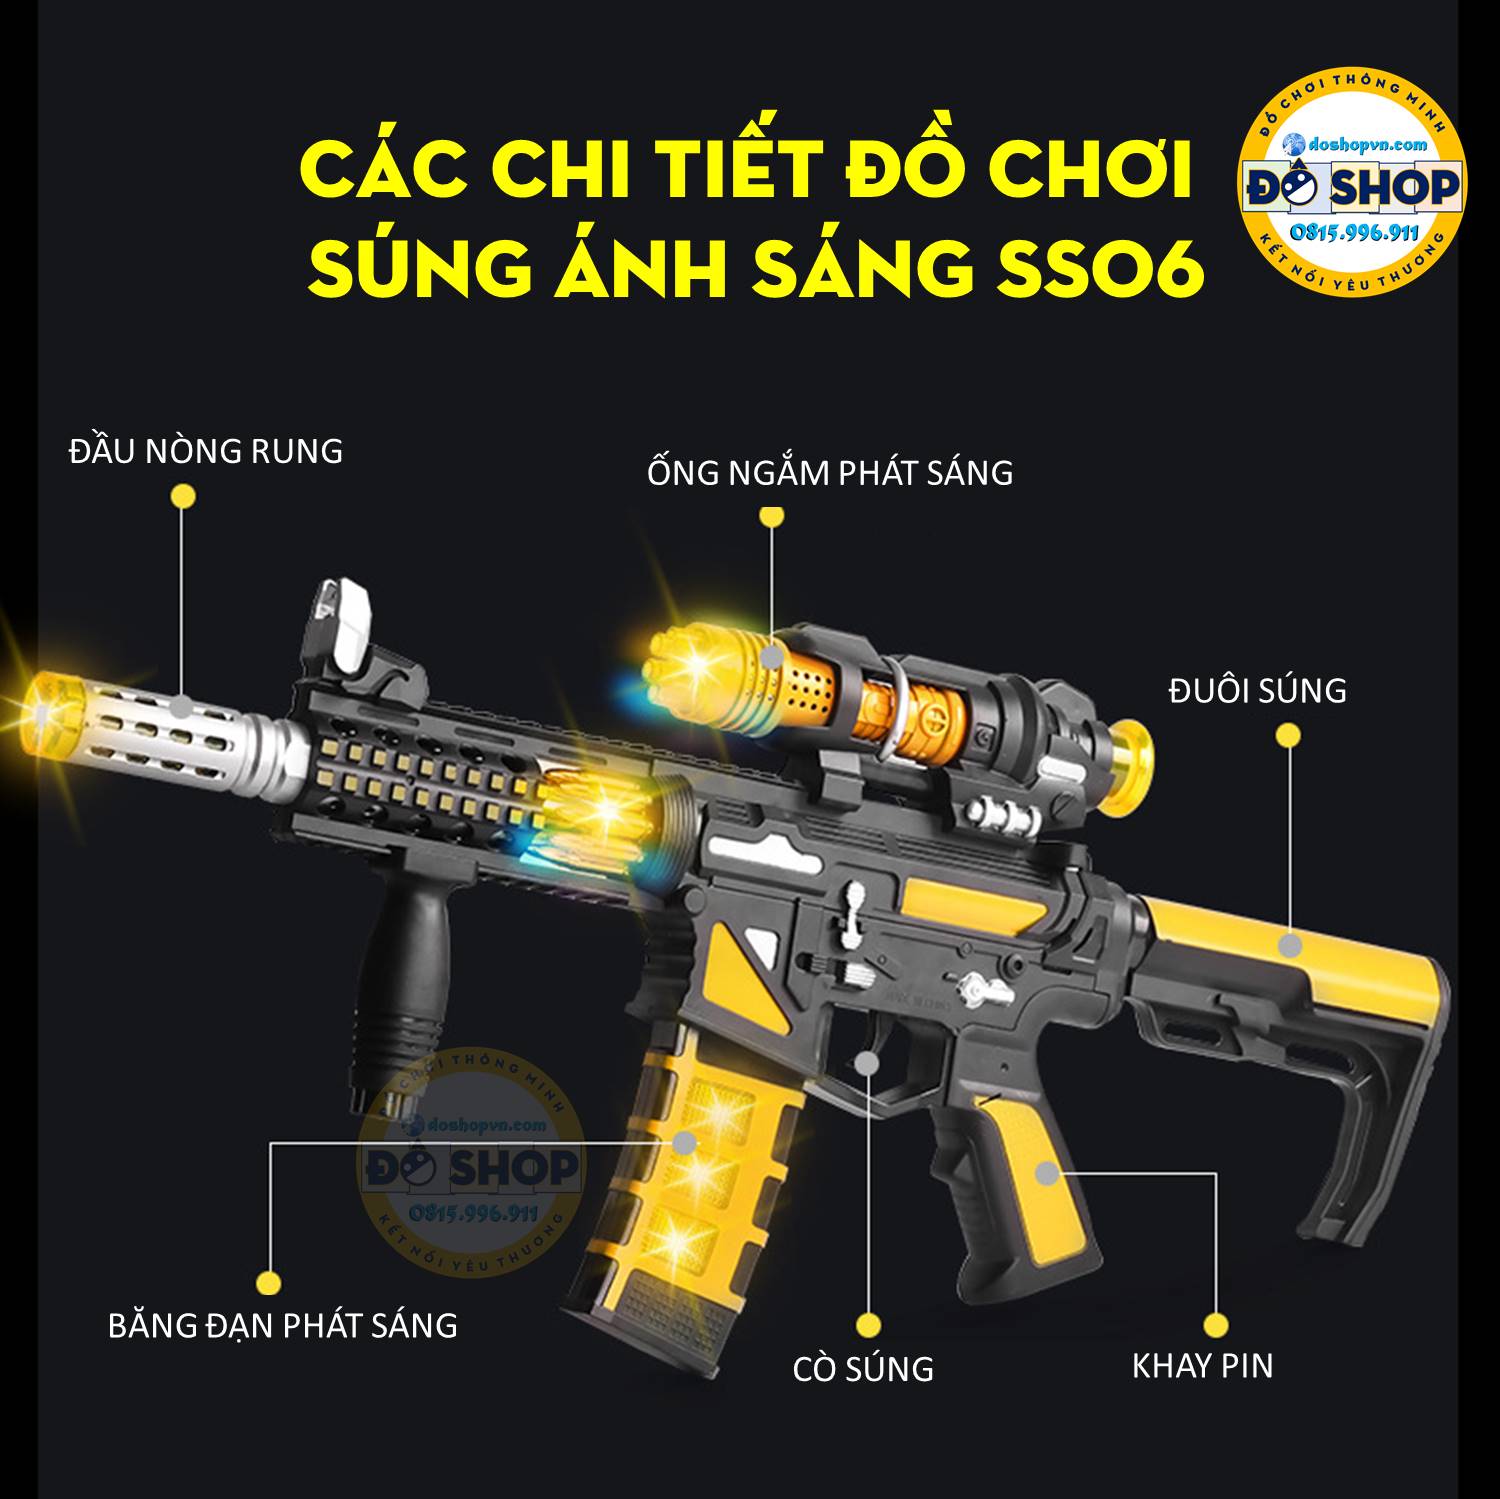 Các thành phần của đồ chơi súng ánh sáng SS06